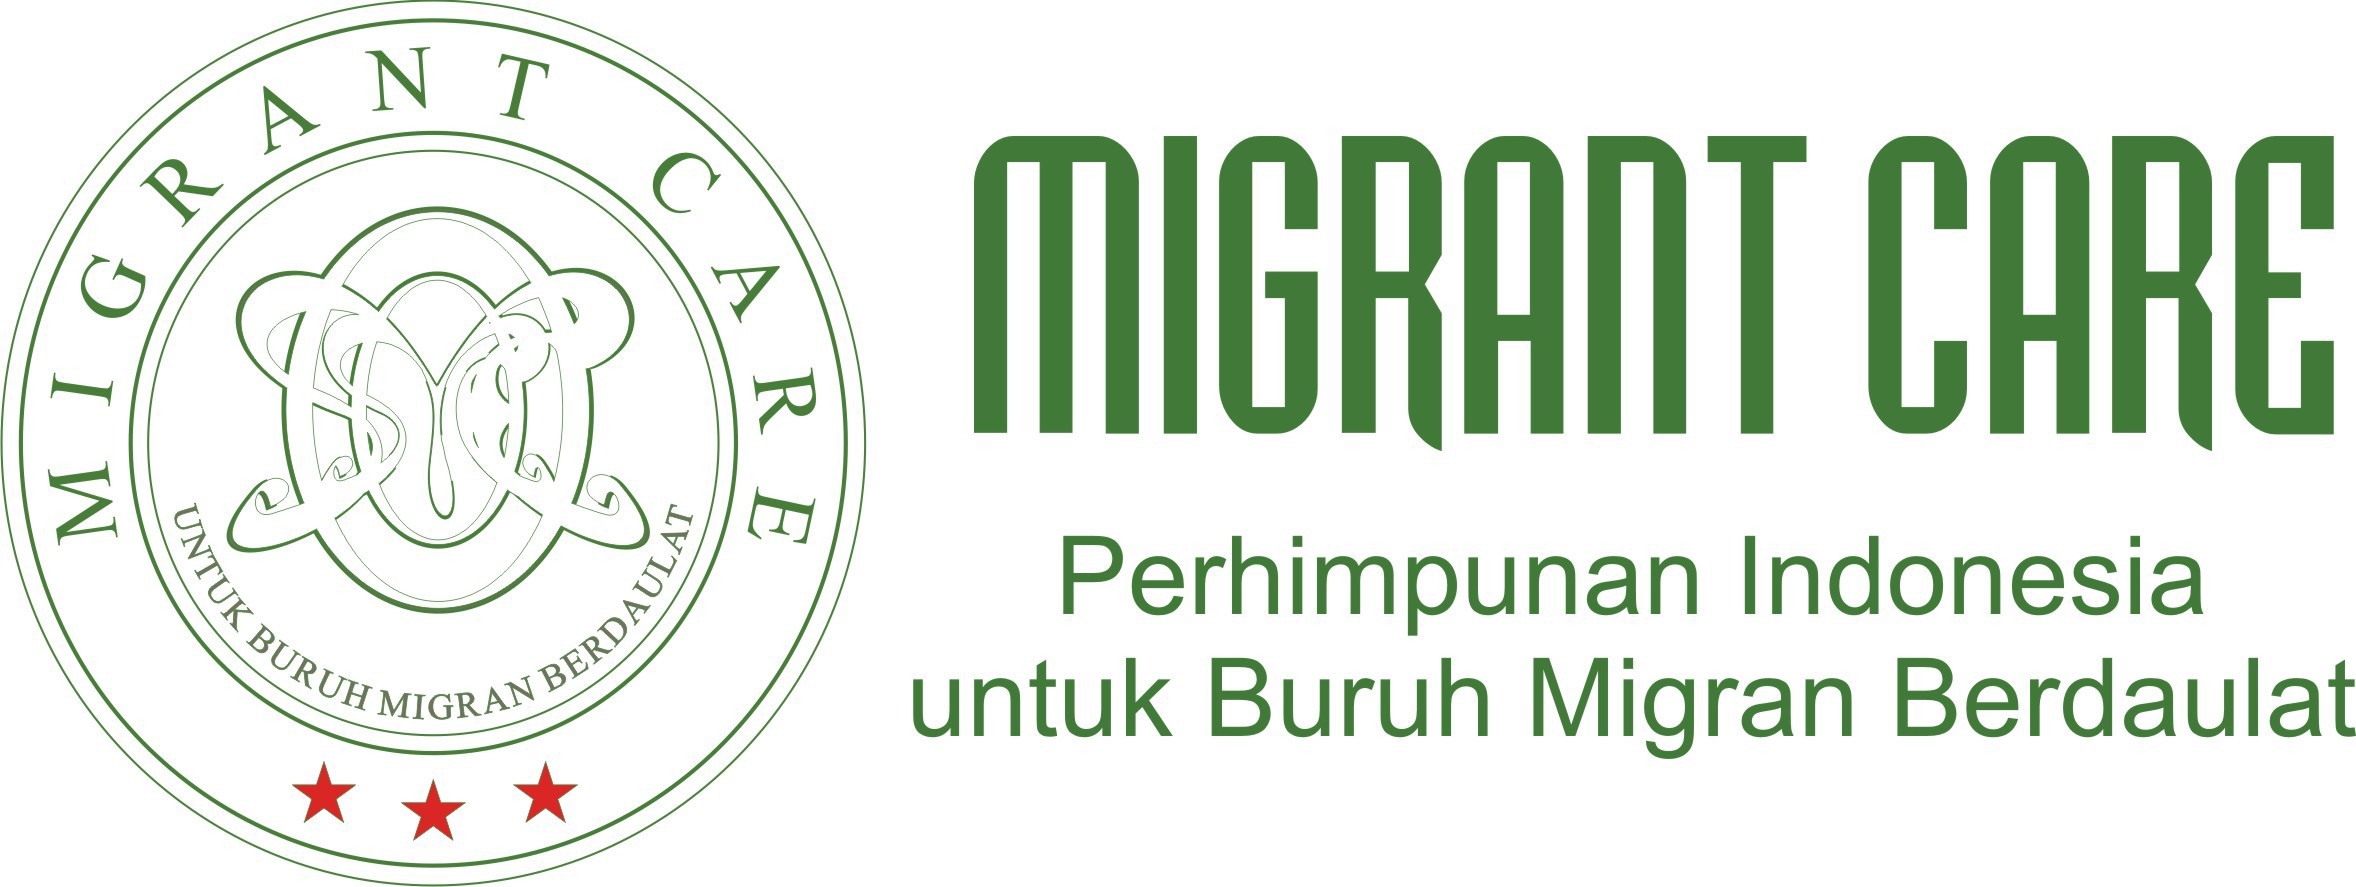 Migrant Care